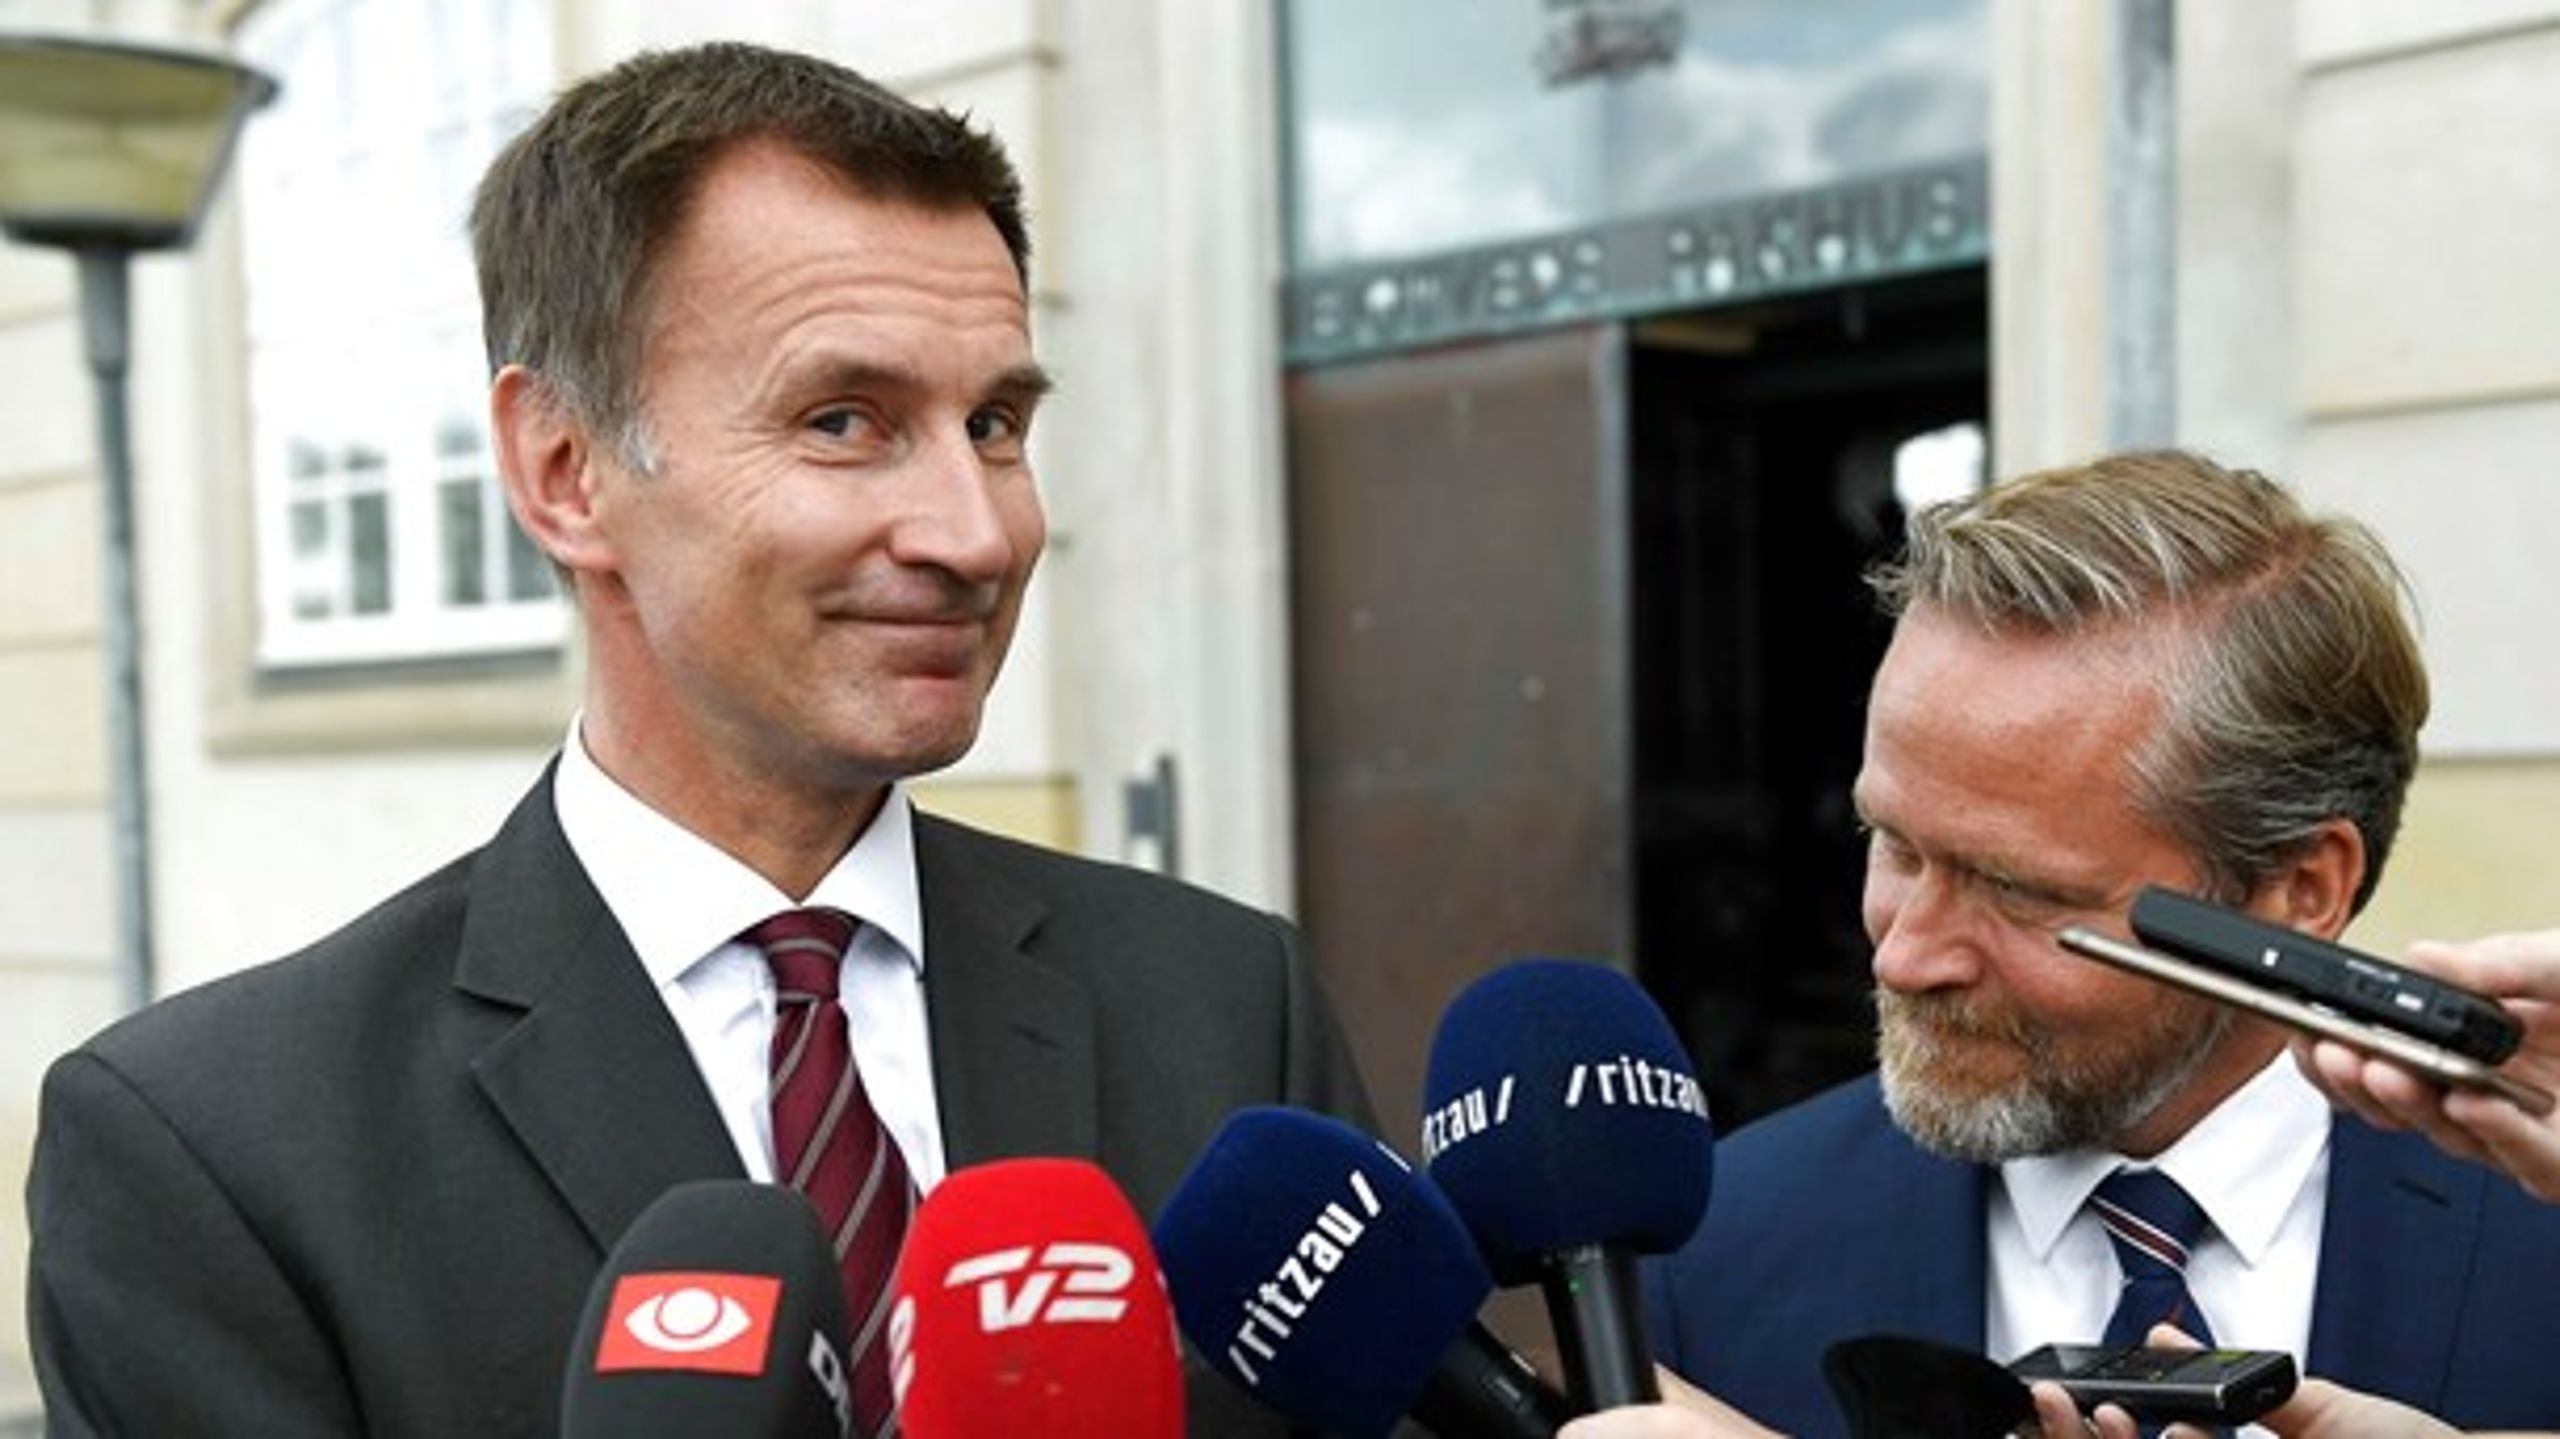 Den nye britiske udenrigsminister, Jeremy Hunt, mødtes i sidste uge&nbsp;med Danmarks udenrigsminister Anders Samuelsen (LA) for at drøfte bl.a. Brexit.